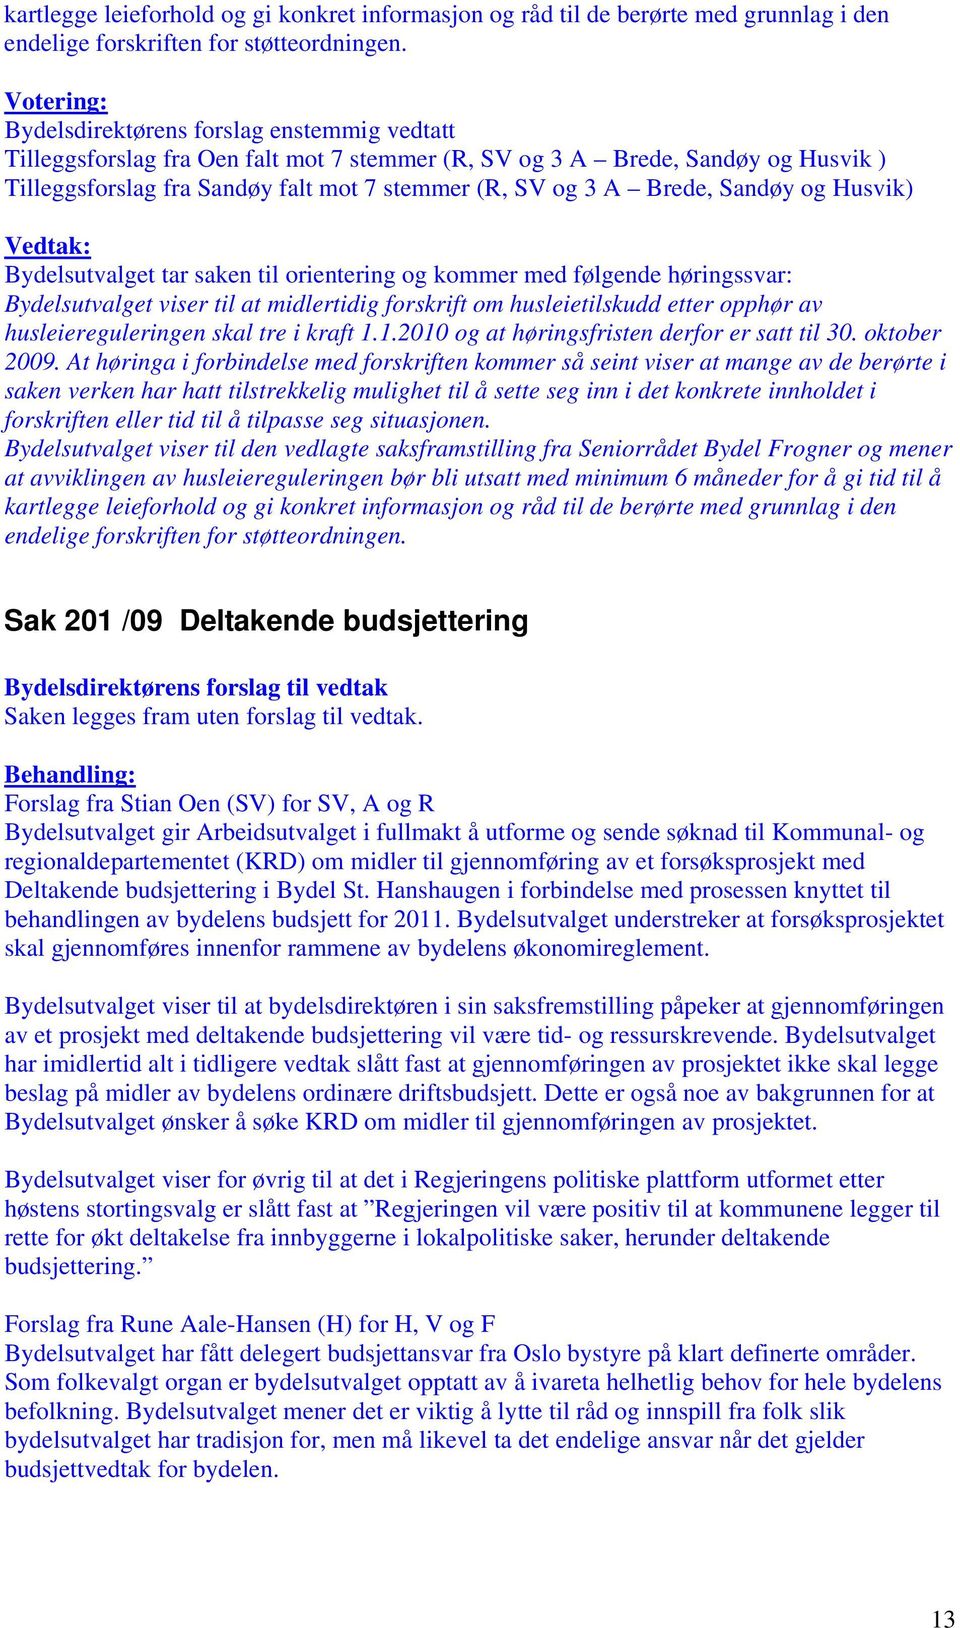 Sandøy og Husvik) Bydelsutvalget tar saken til orientering og kommer med følgende høringssvar: Bydelsutvalget viser til at midlertidig forskrift om husleietilskudd etter opphør av husleiereguleringen